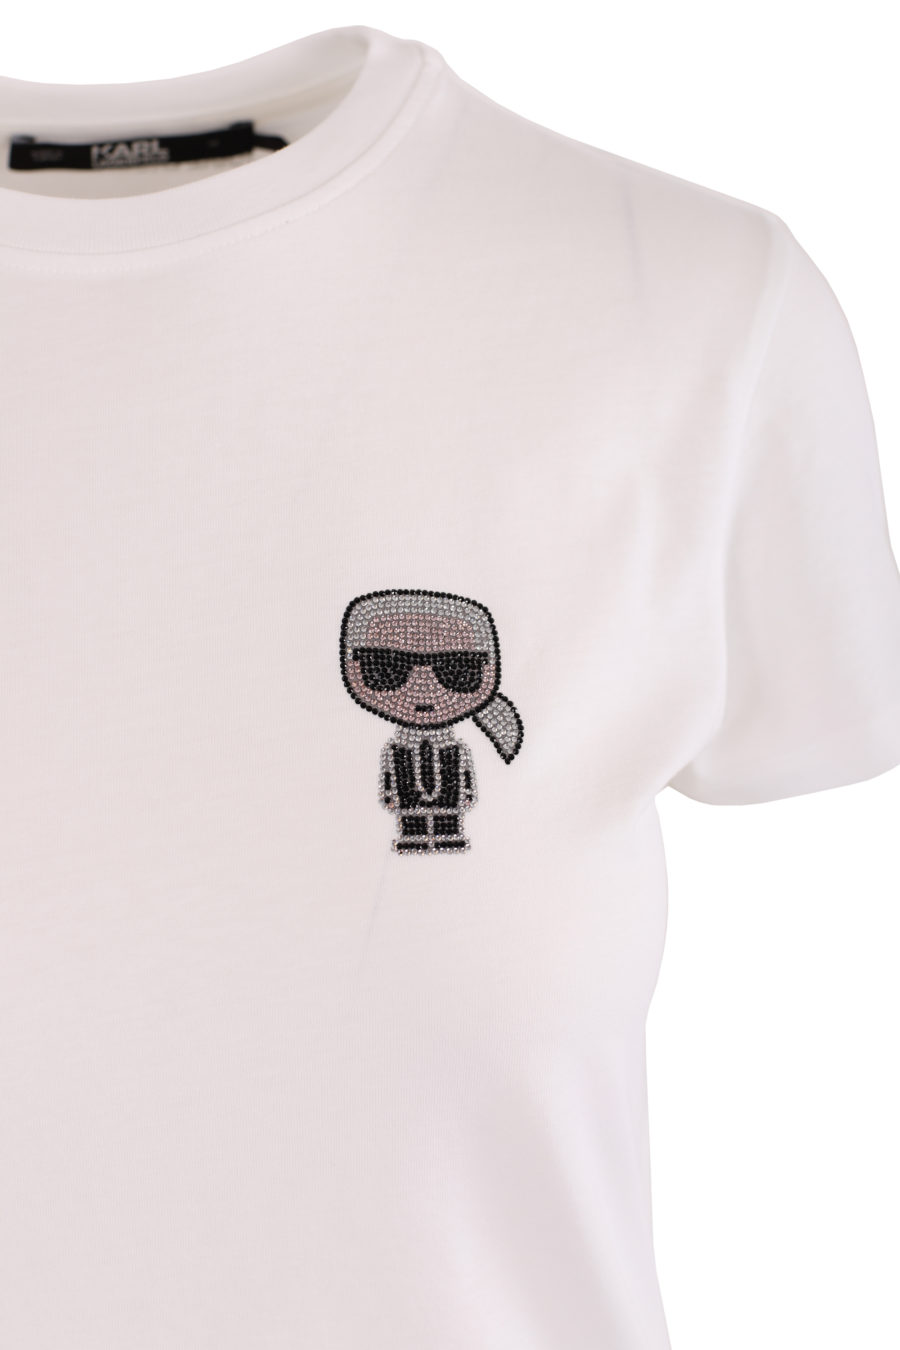 White T-shirt with shiny "Karl" - 20adb635bedb21462ffce05e766d14651e77d3e3e3